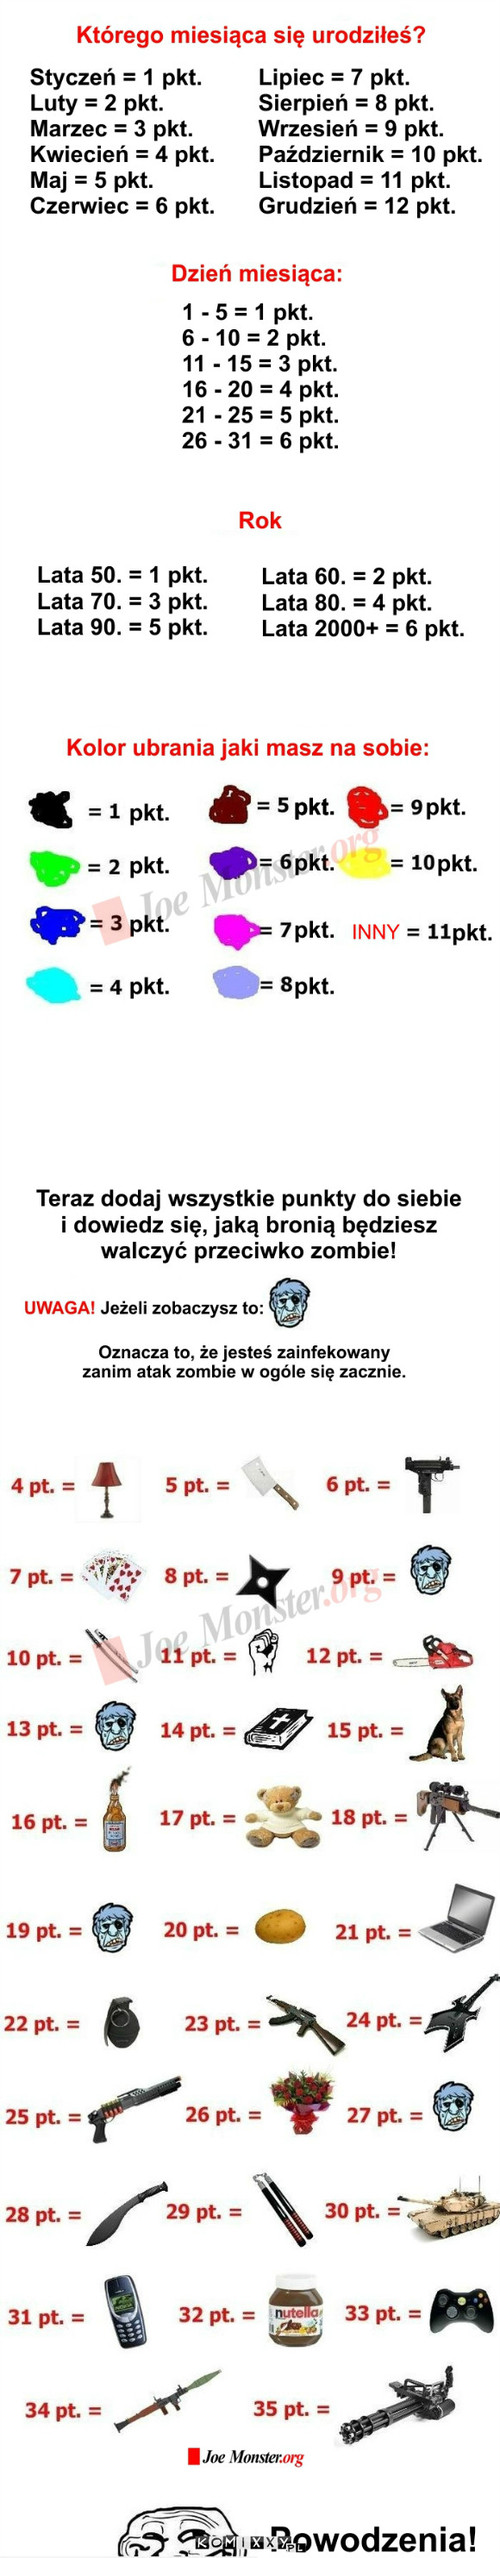 Czy przeżyłbyś atak zombie?  –  